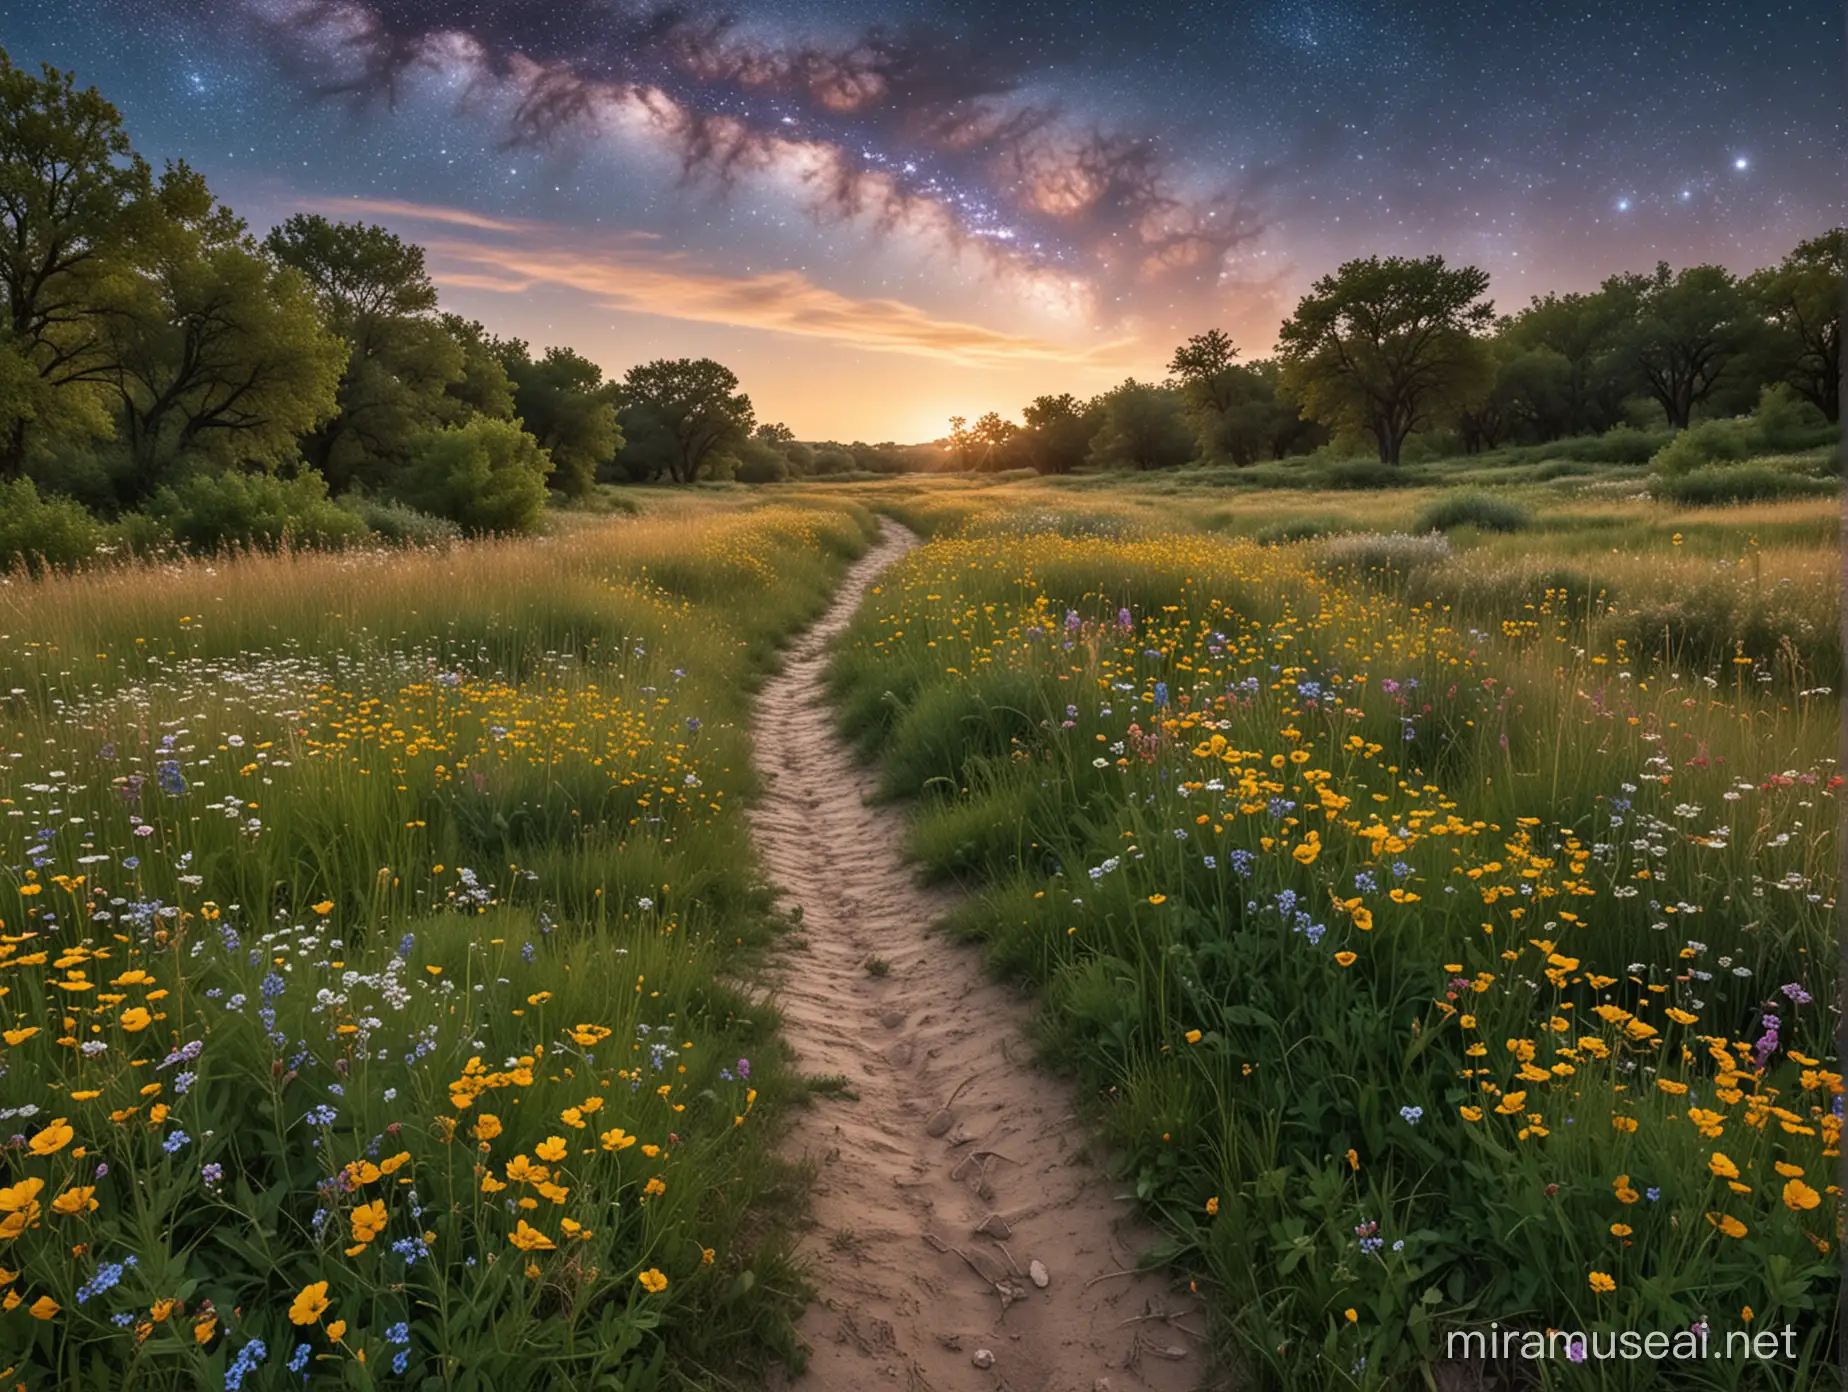 một con đường mòn chạy dọc thảo nguyên, hai bên nhiều hoa lá, đi tới vũ trụ, tuyệt đẹp